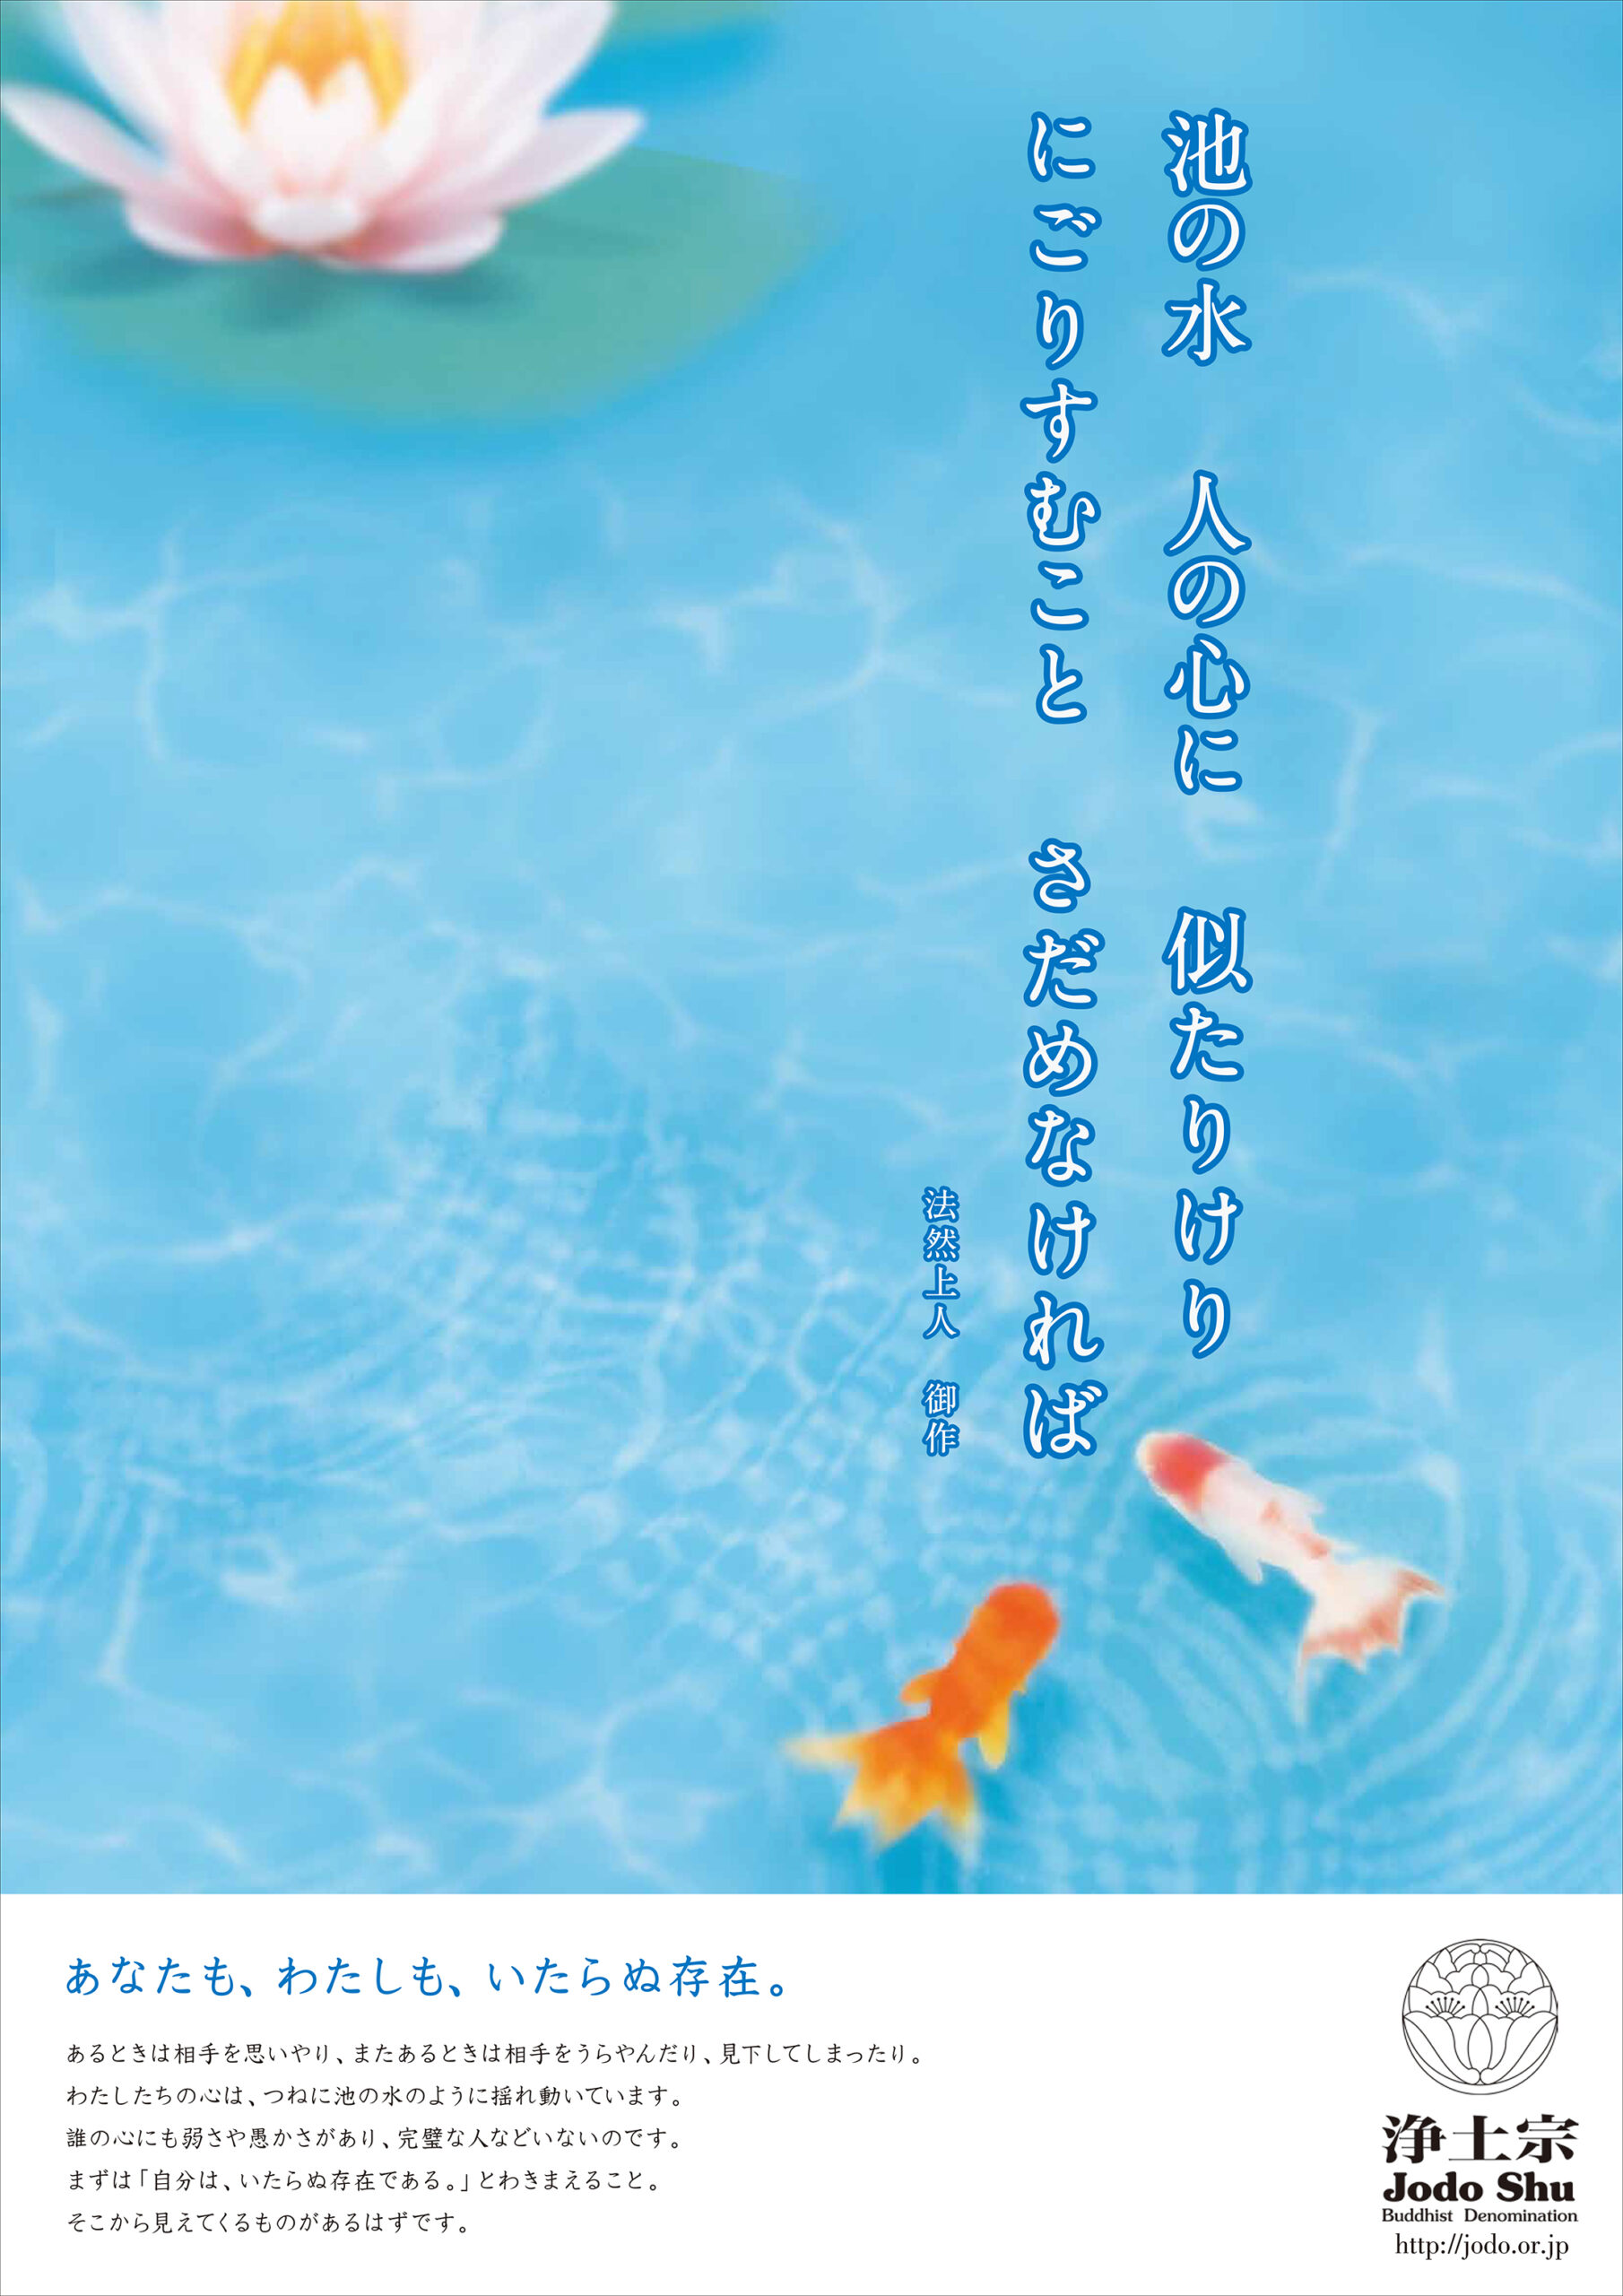 平成28年度浄土宗発行ポスター「私たちは迷いつづけるのだろうか」